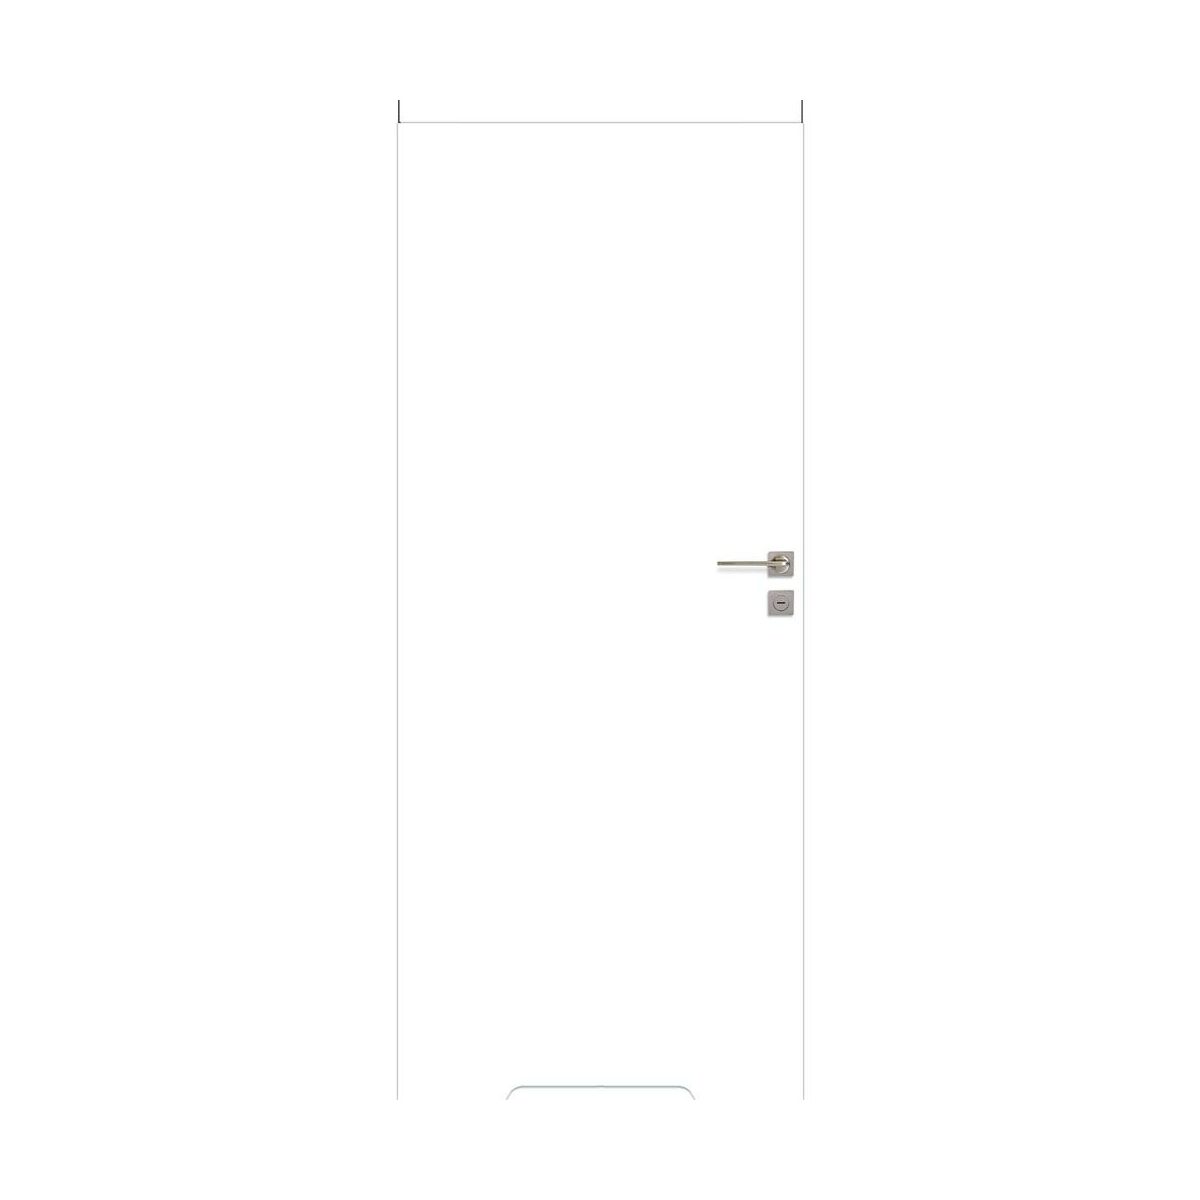 Drzwi wewnętrzne pełne bezprzylgowe łazienkowe z podcięciem wentylacyjnym Basic 60 białe PP Voster